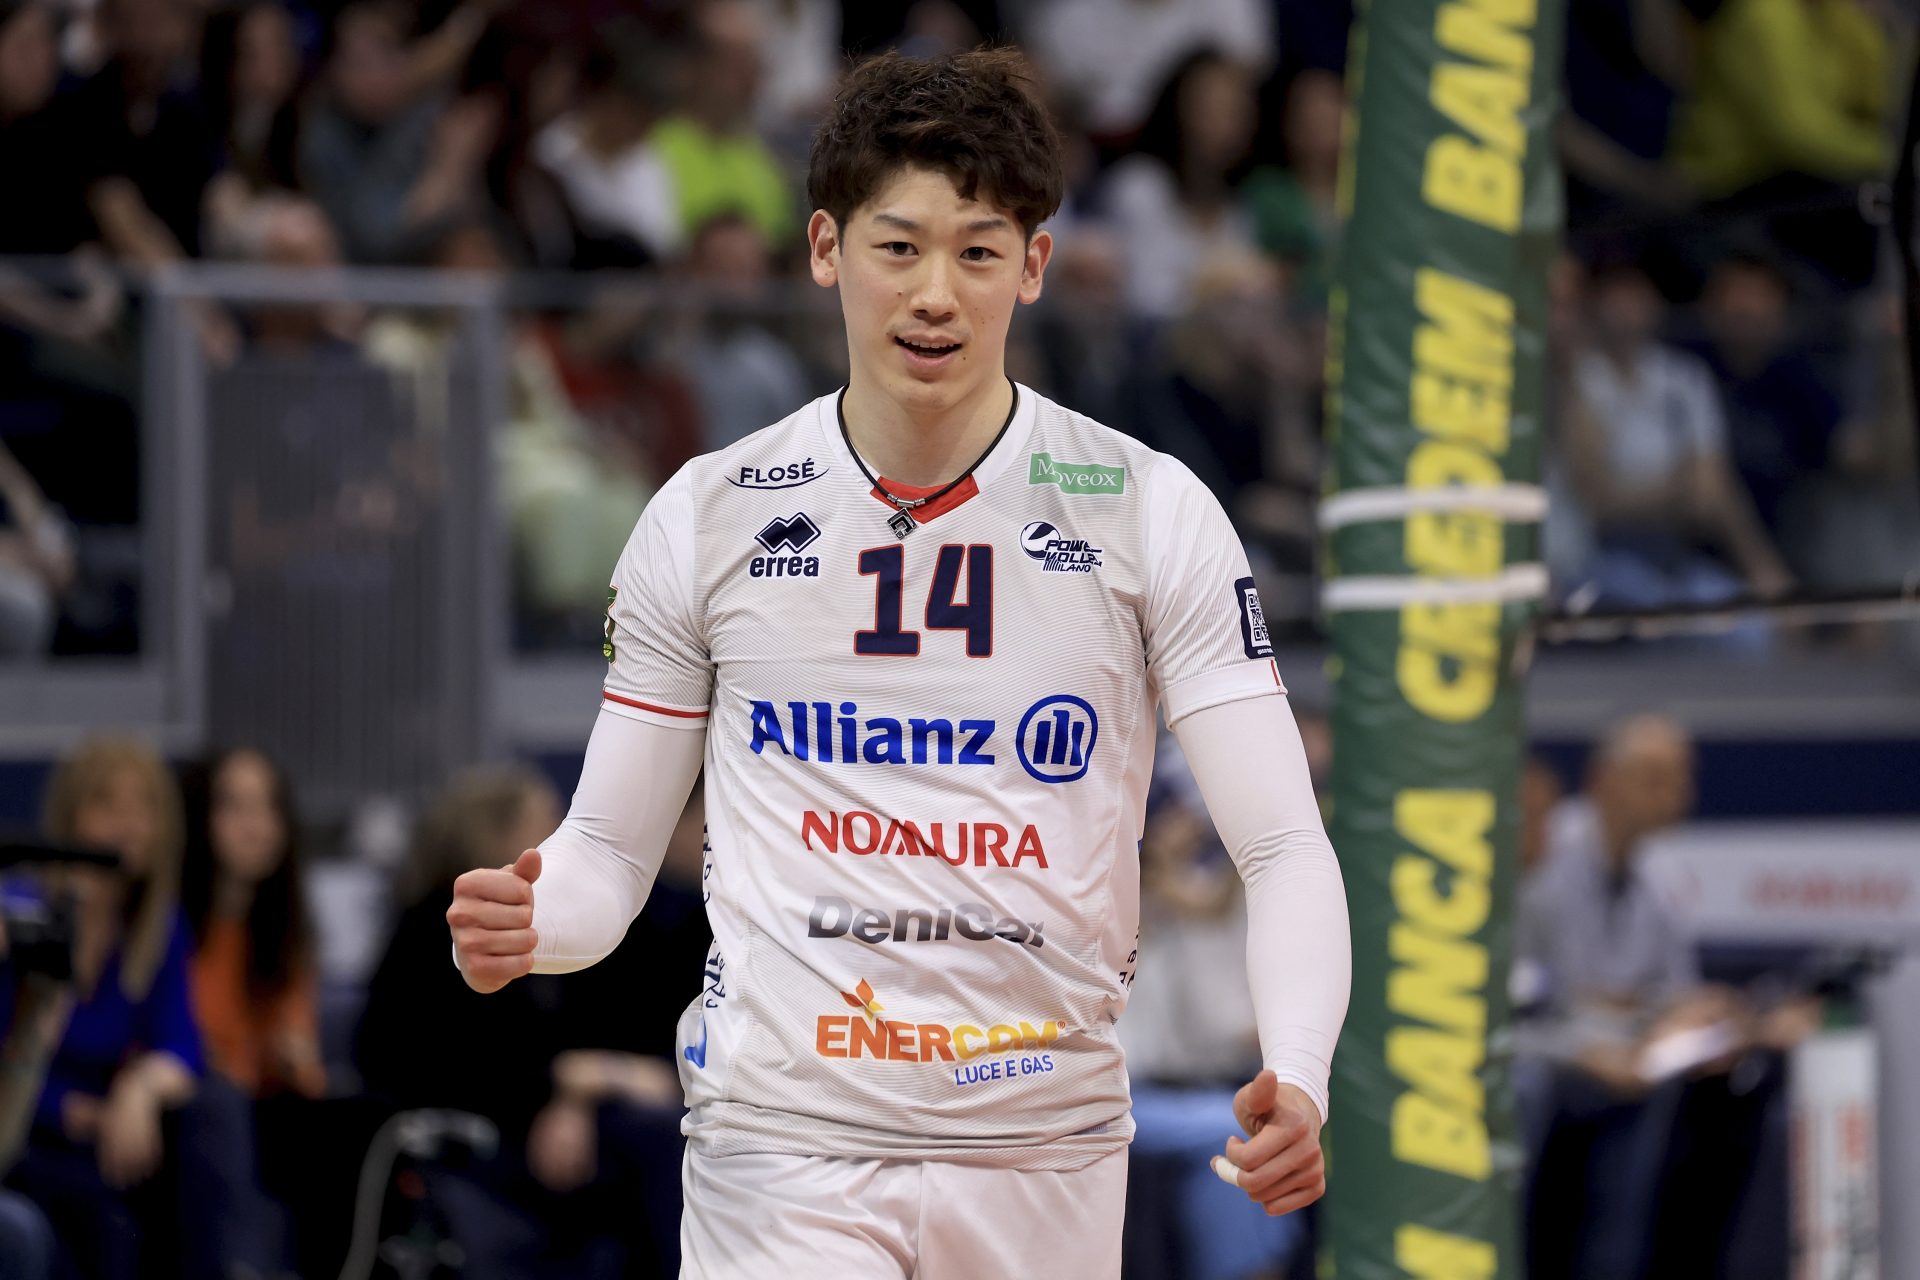 Pallavolo: chi è Yuki Ishikawa, il campione che dal Giappone sta conquistando l'Italia